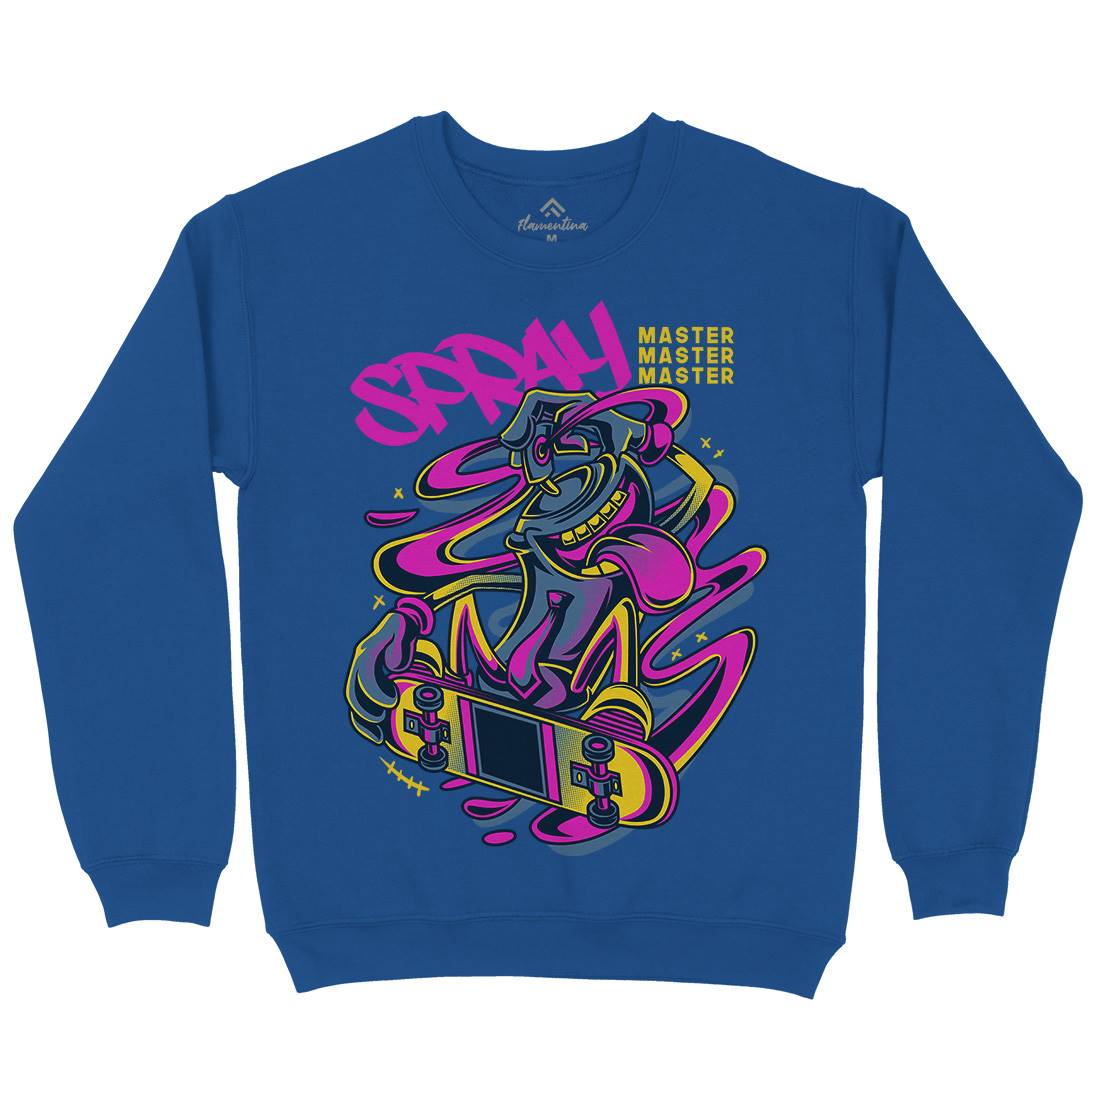 Spray Master Kids Crew Neck Sweatshirt Skate D832